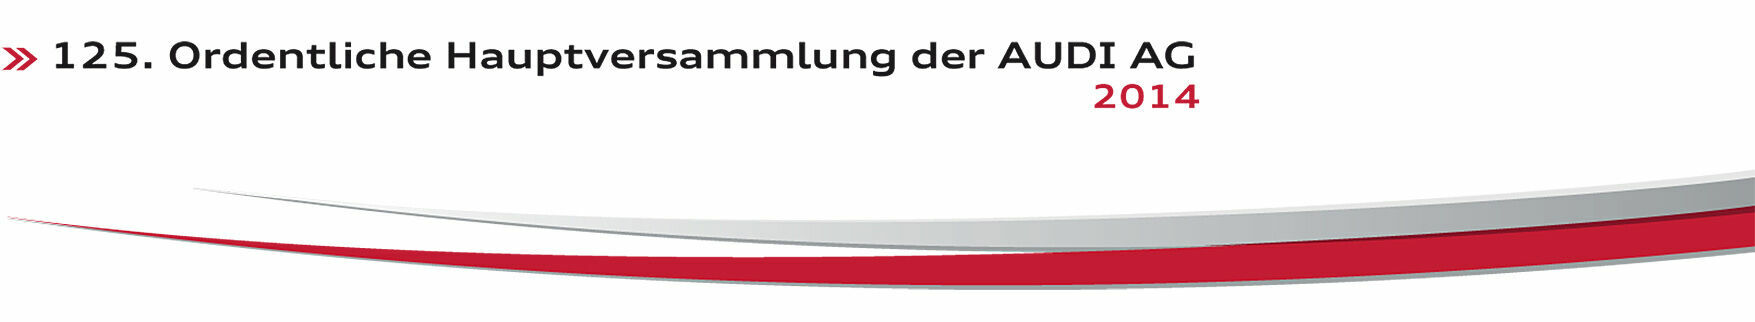 Live auf Audi MediaTV: Die 125. Hauptversammlung der AUDI AG